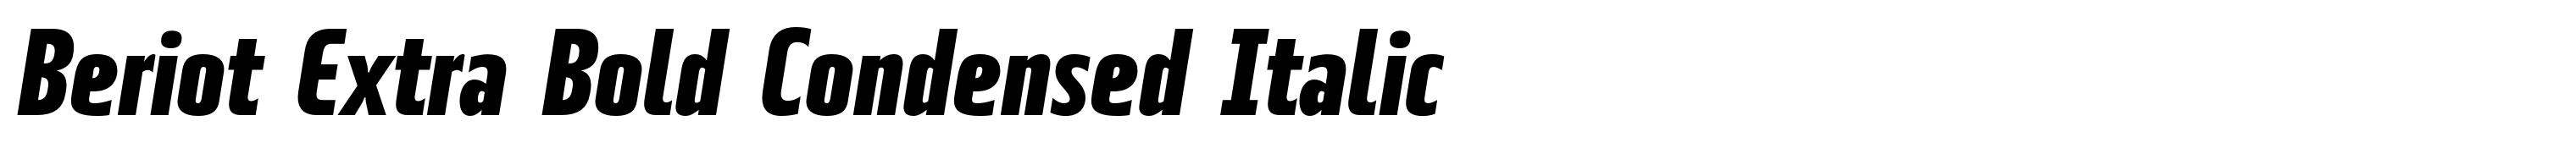 Beriot Extra Bold Condensed Italic